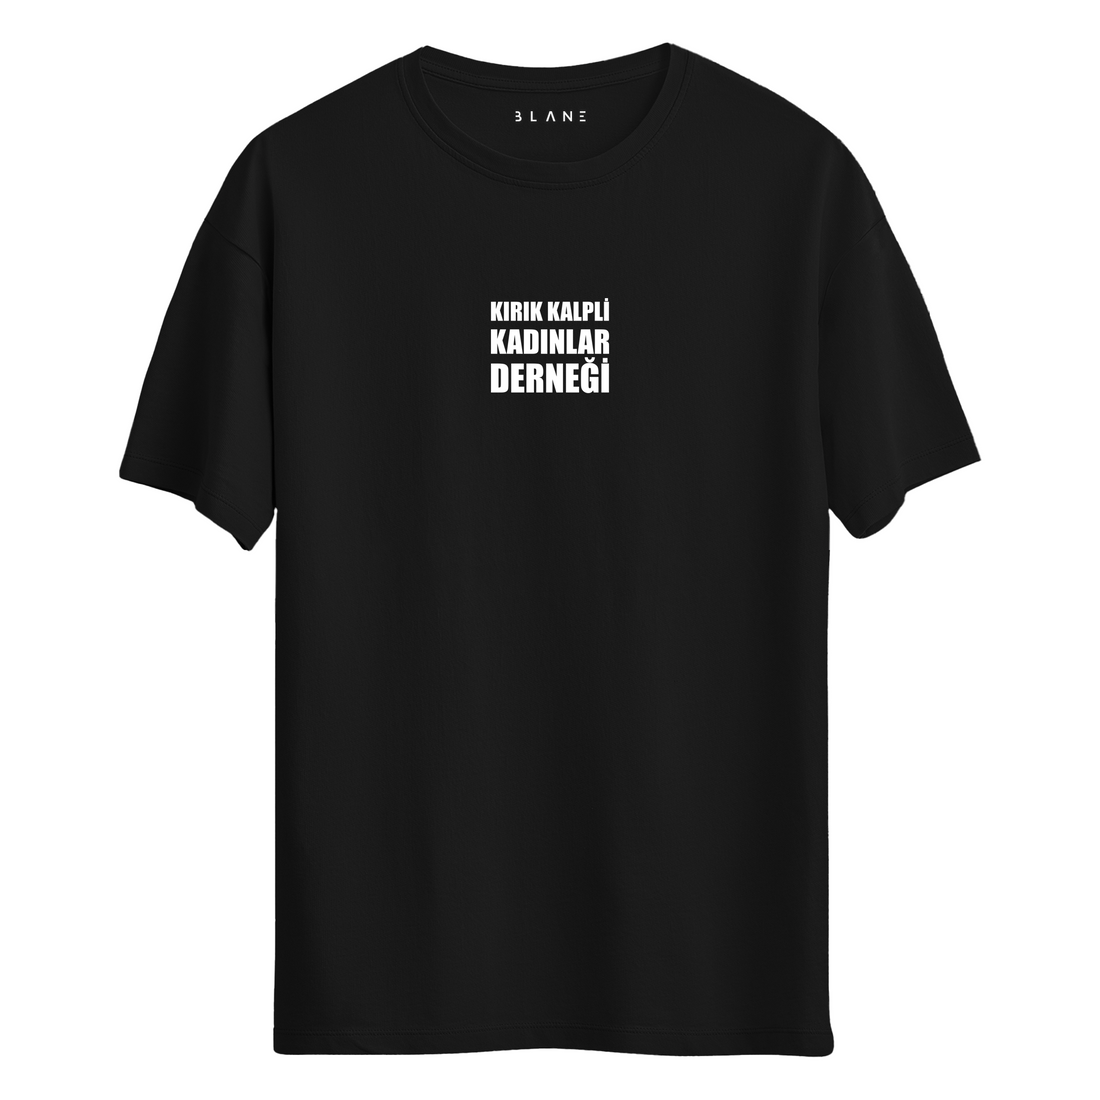 Kırık Kalpli Kadınlar Derneği - T-Shirt